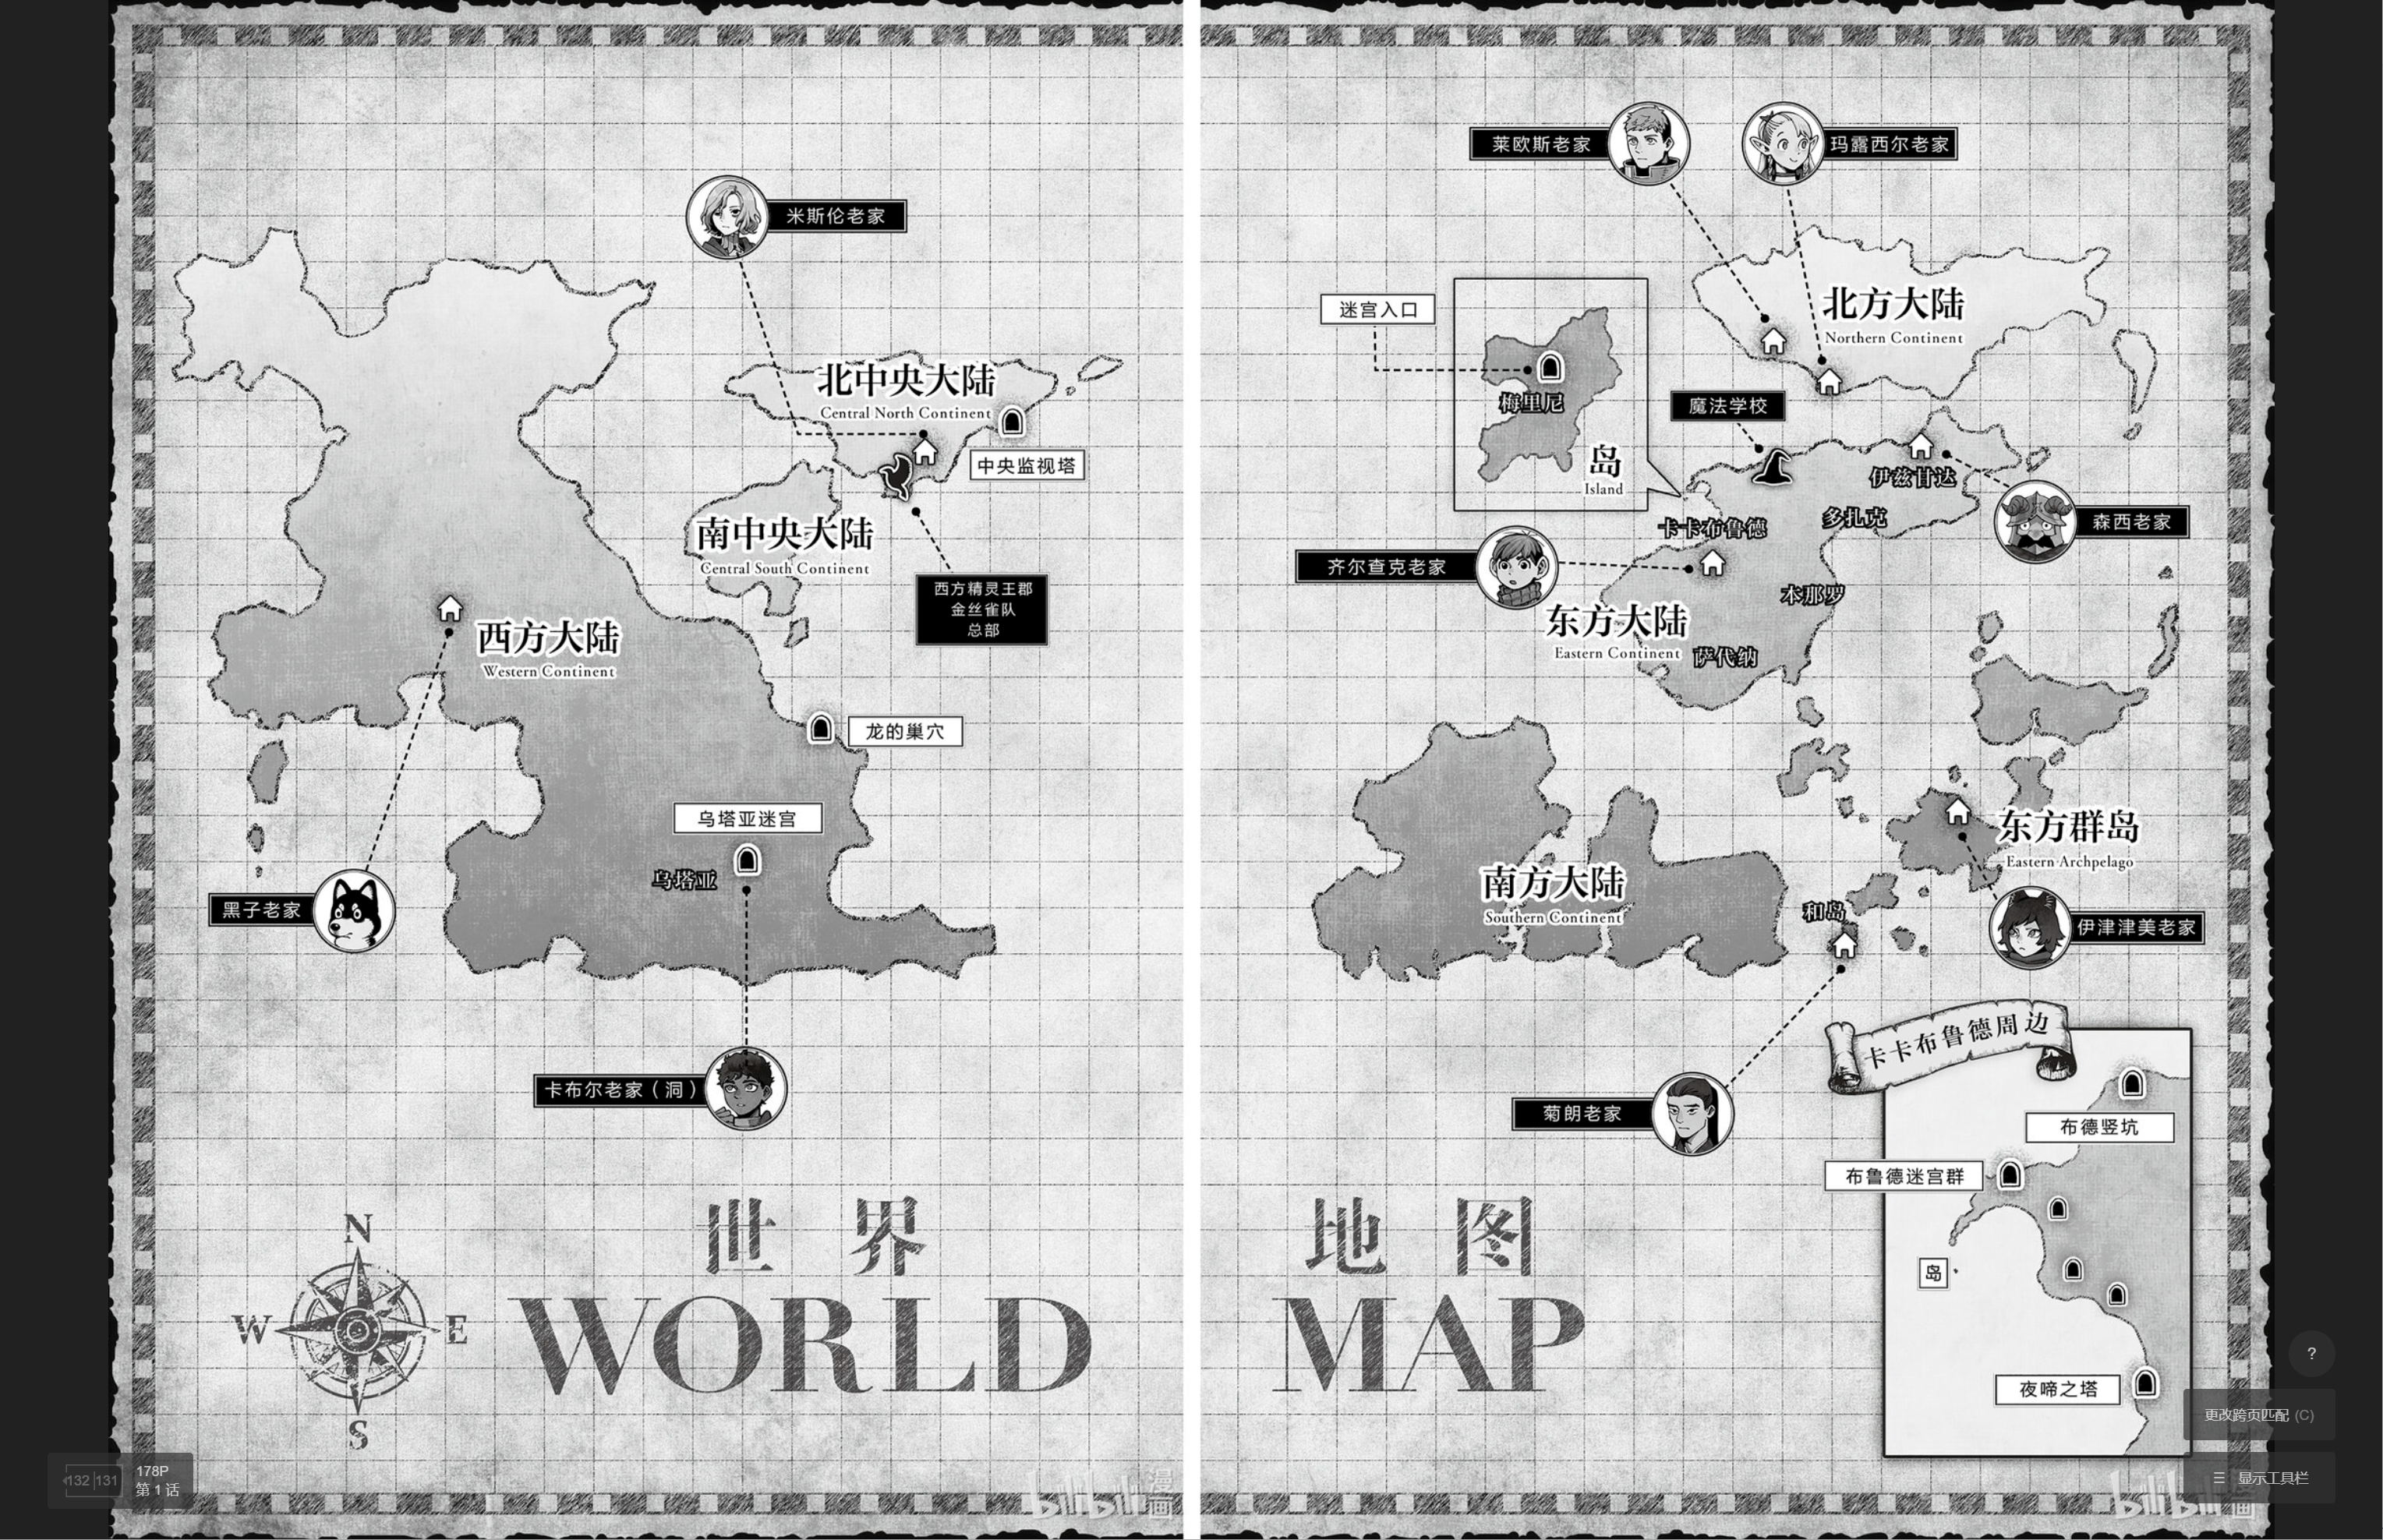 《迷宫饭》系列的世界地图，我们的最初的一版地图规划也可以像这样，定义一个大致的大陆分布和信息点，而后就可以考试考虑各个阵营、势力、国家或是种族的分布了